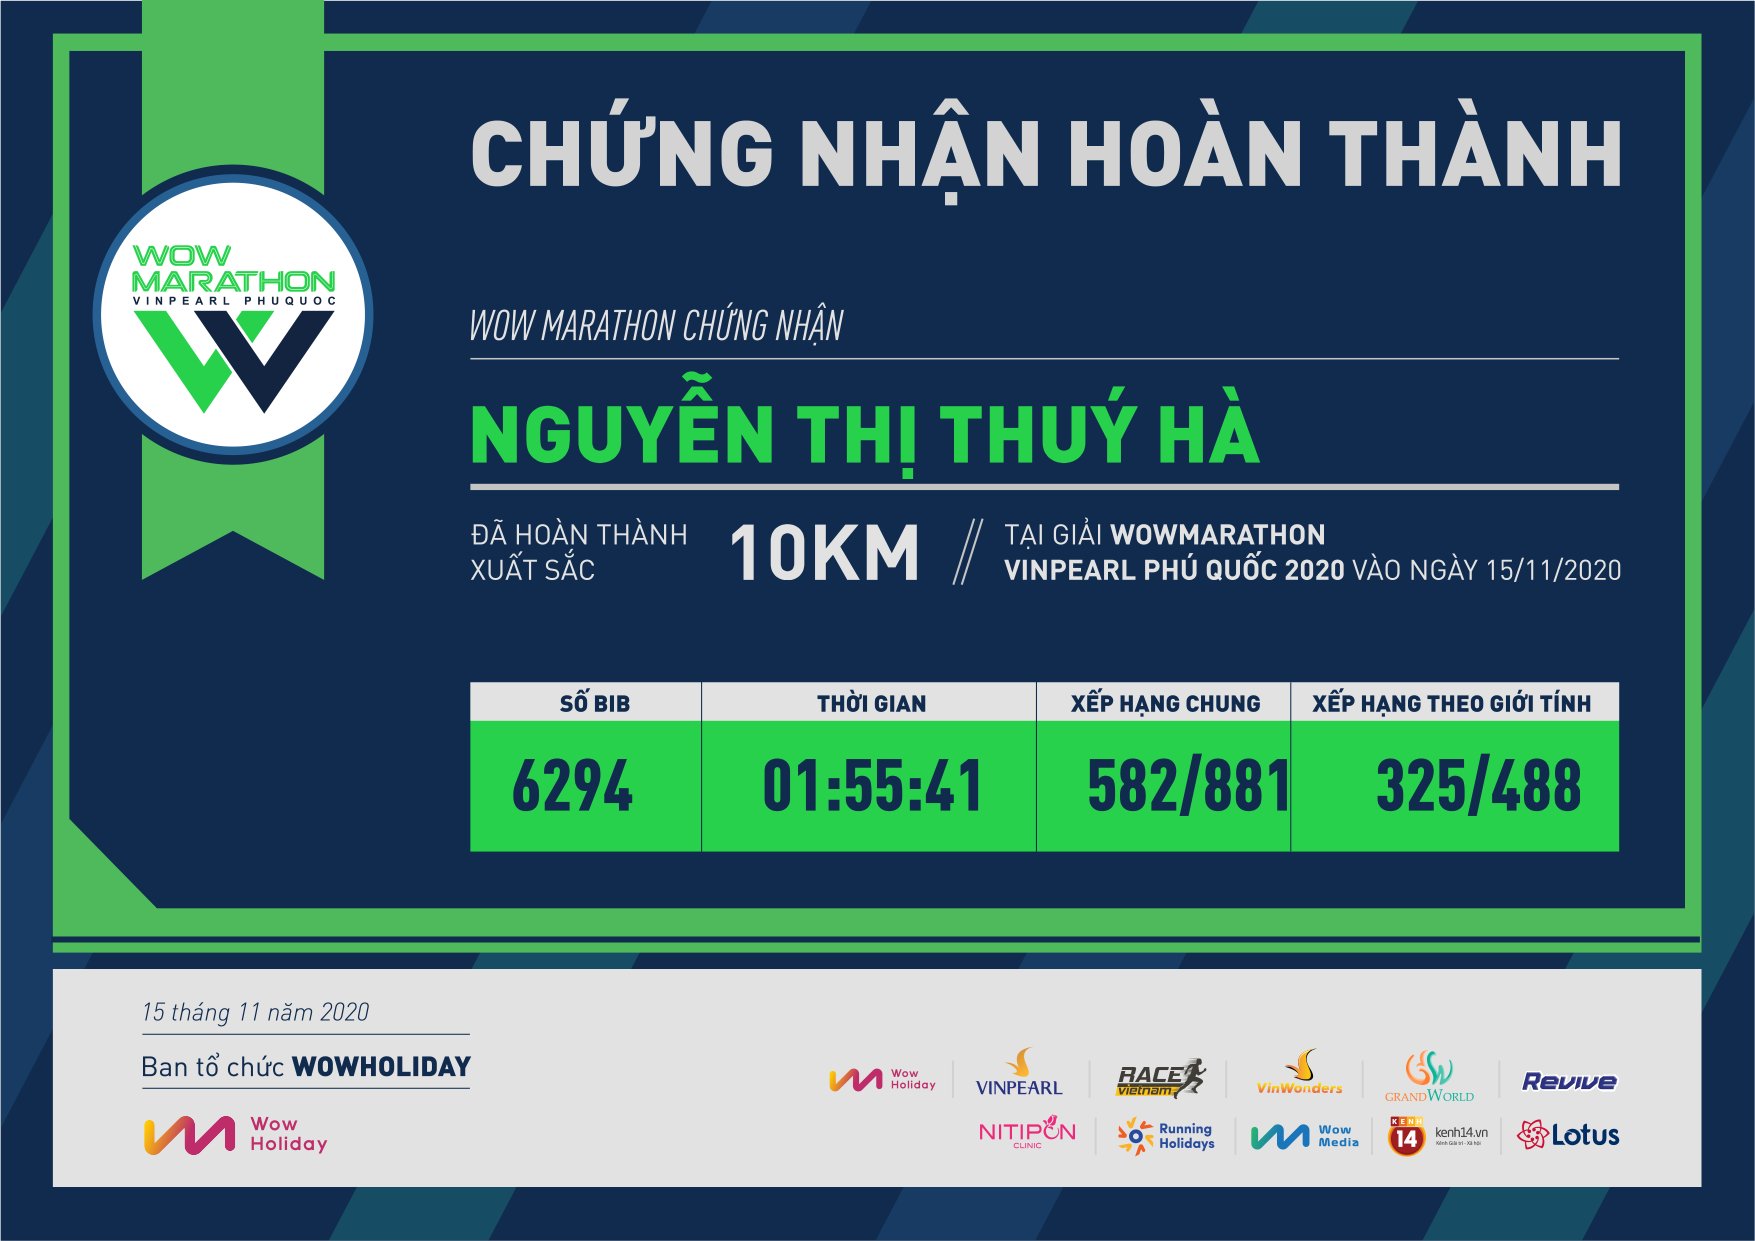 6294 - Nguyễn Thị Thuý Hà